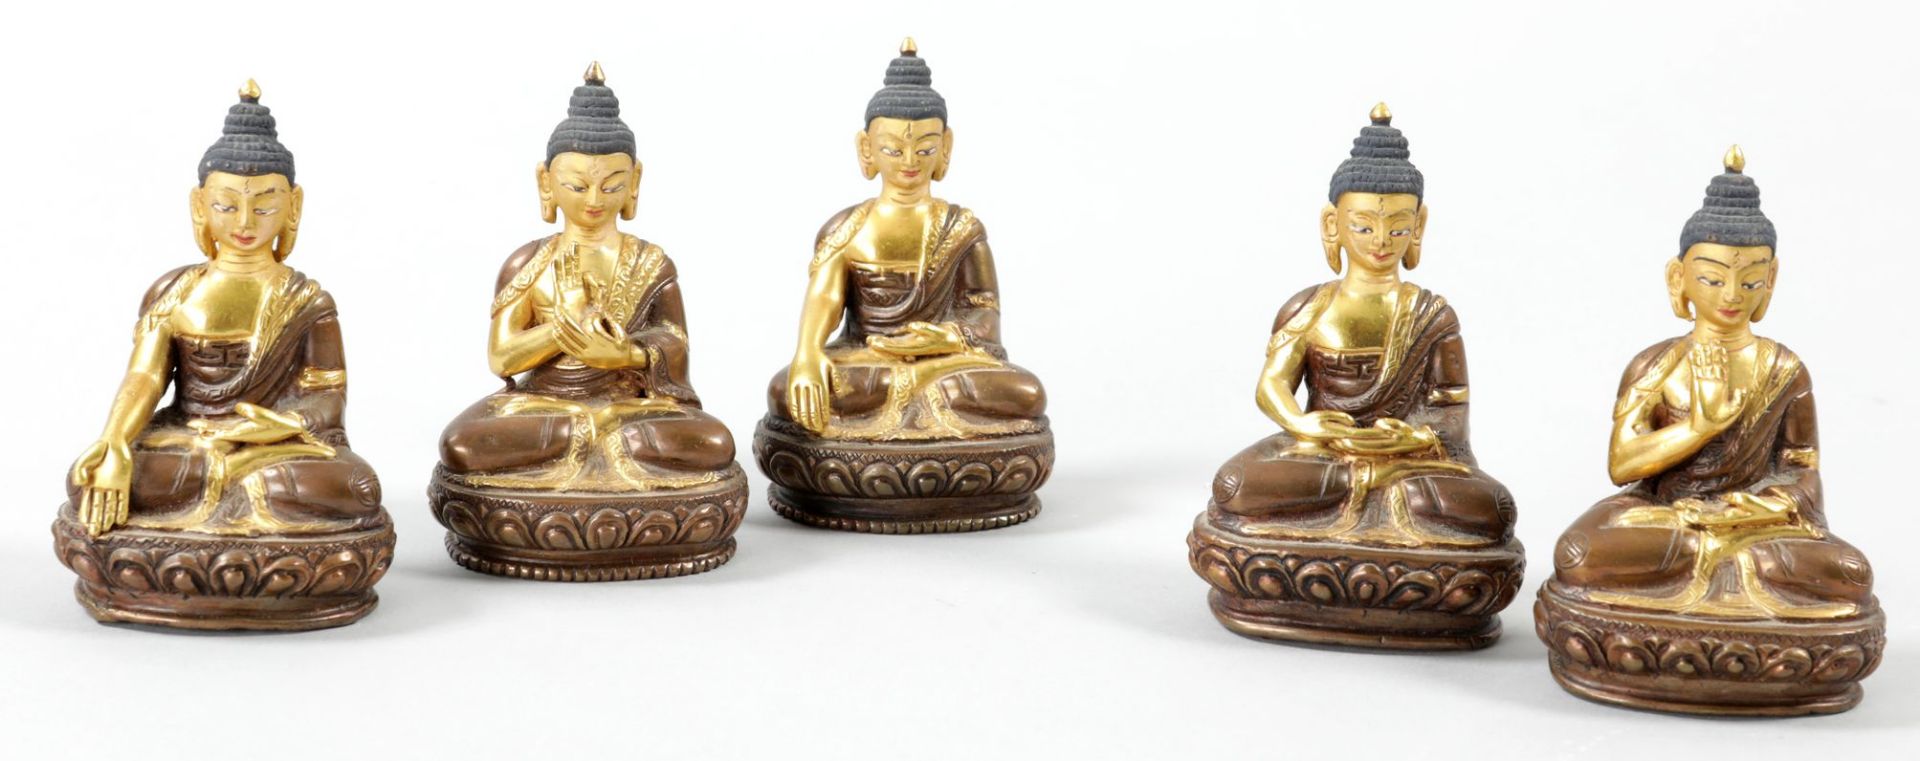 5 kl. Buddhafiguren